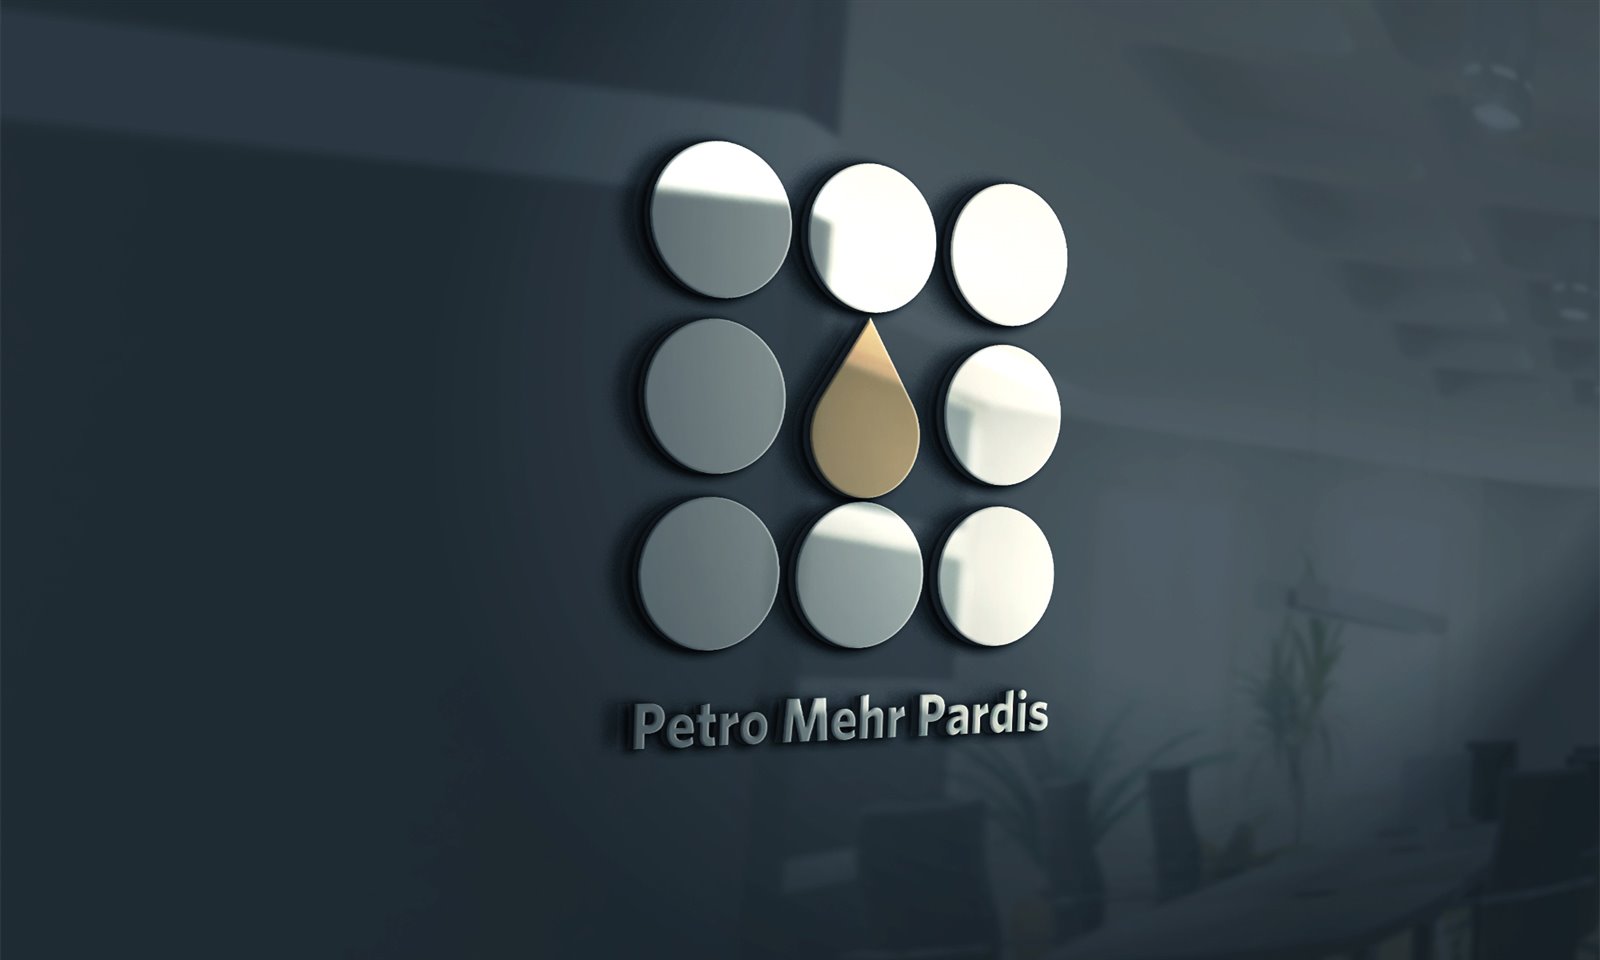 Petro Mehr Pardis co